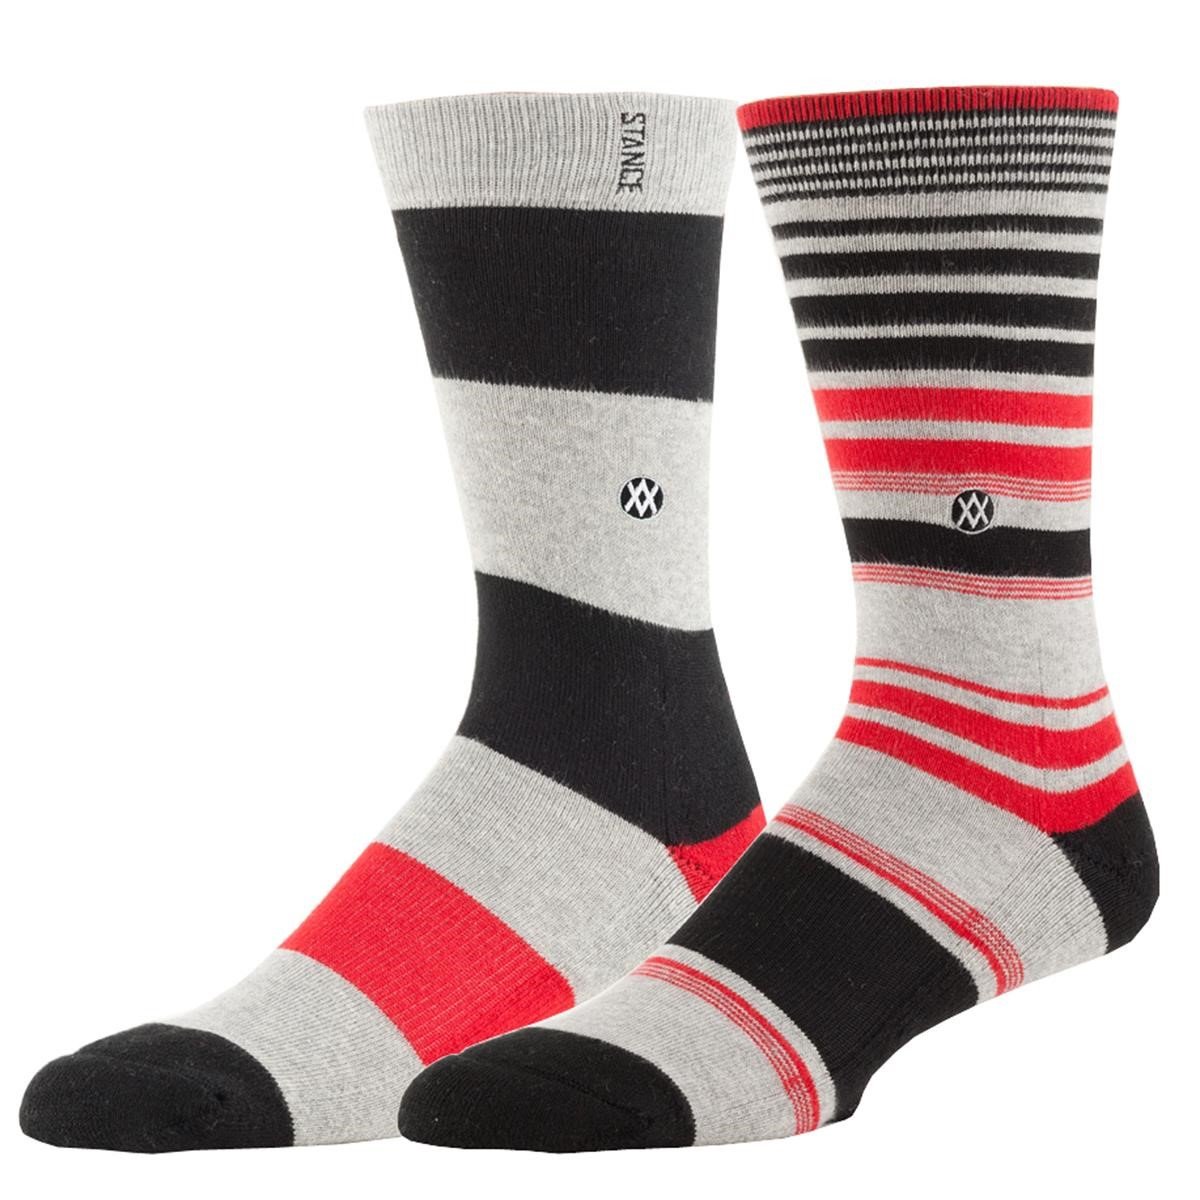 Freizeit/Streetwear Bekleidung-Socken/Strümpfe/Strumpfhosen - Stance Socken Newcastle Grey